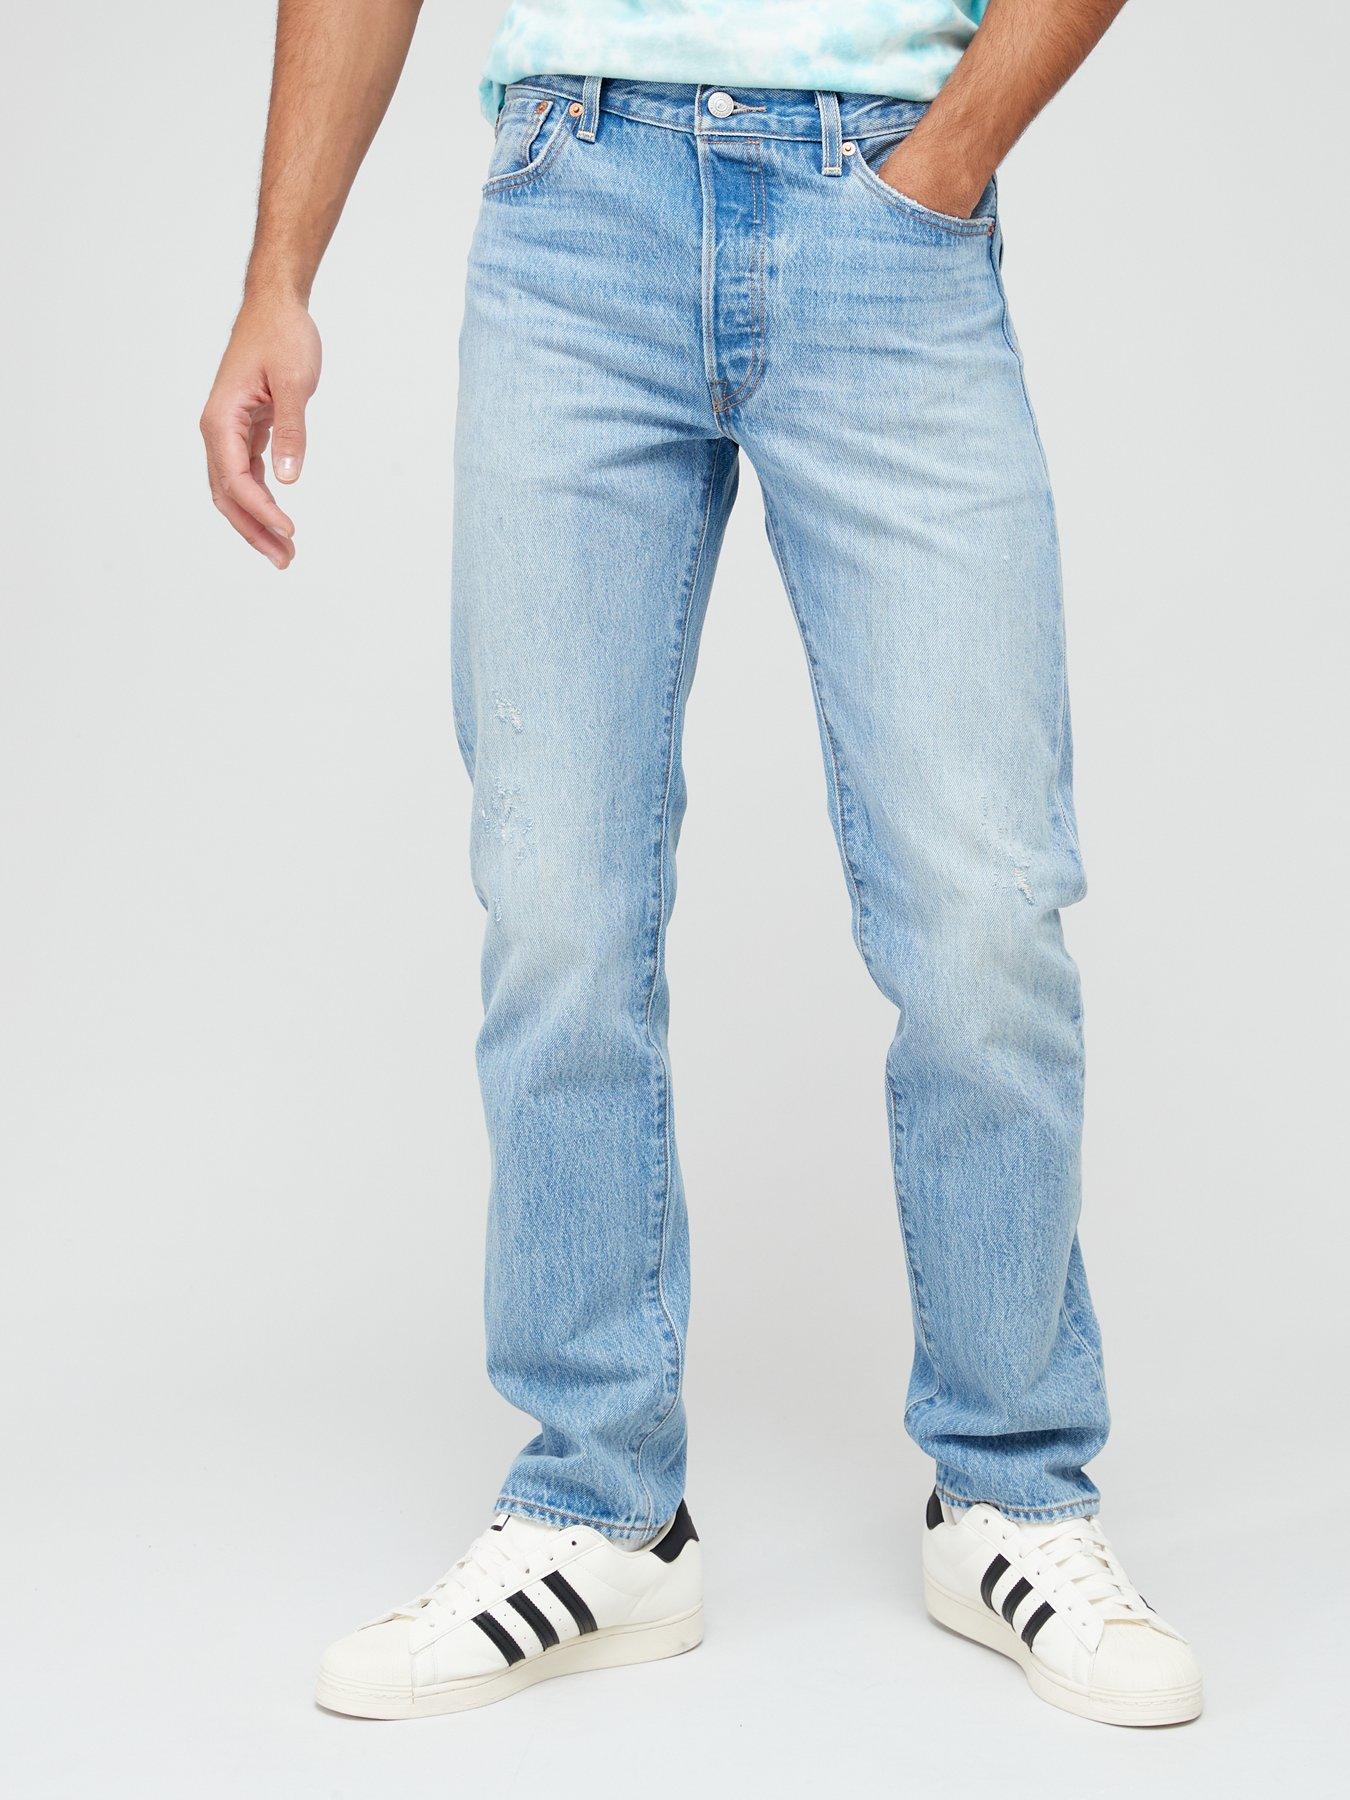 Levi's® Vintage Clothing Men's Sportswear Shirt - Tonal Blues